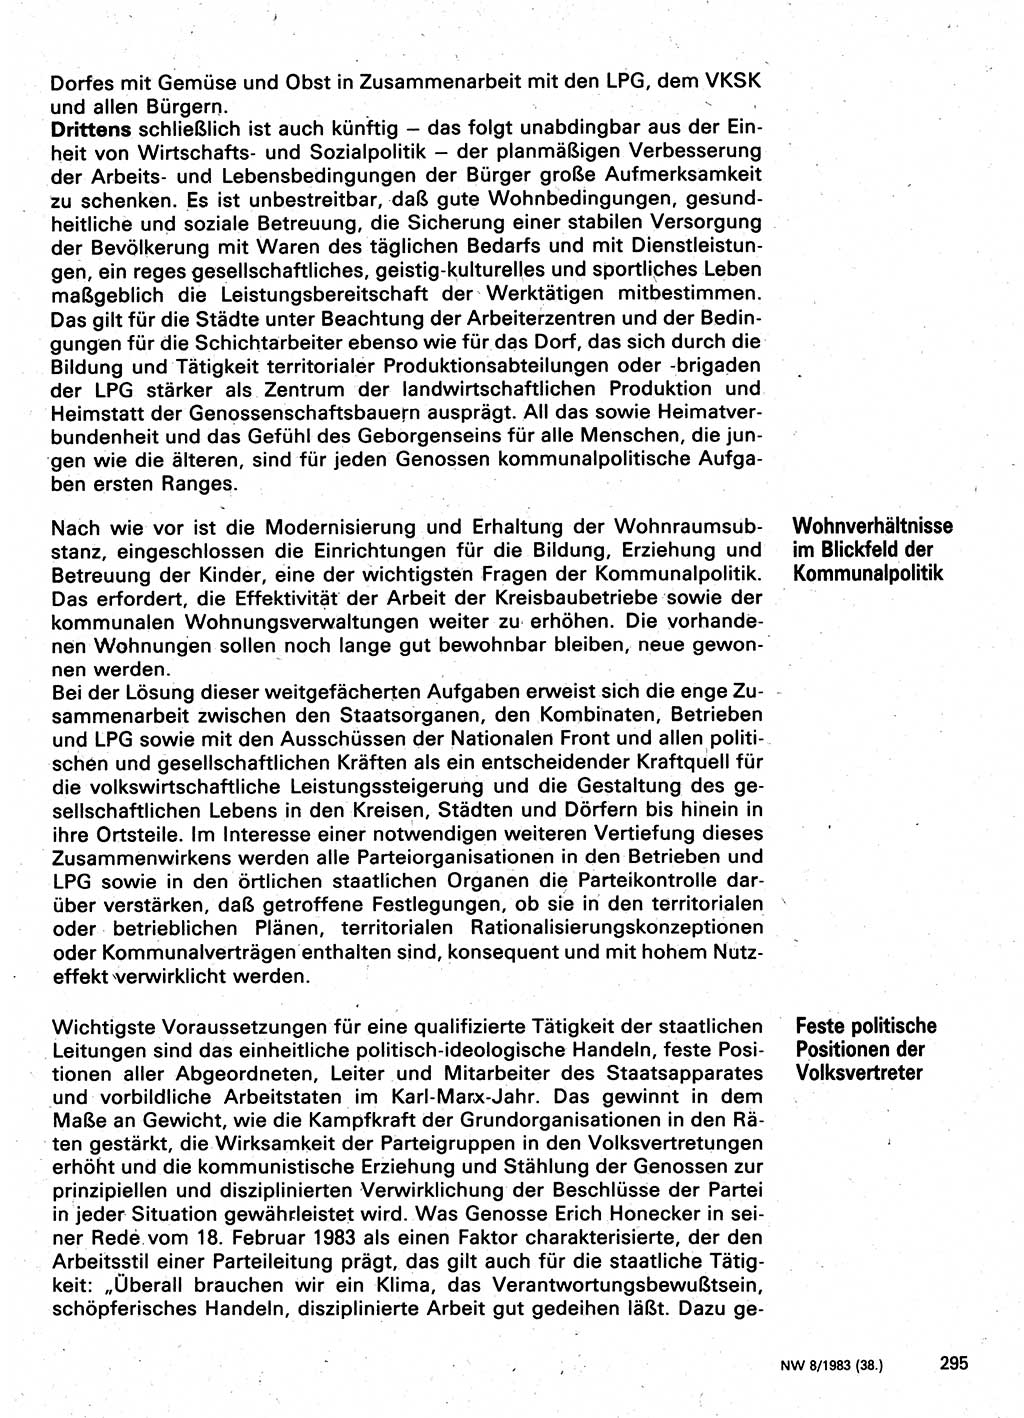 Neuer Weg (NW), Organ des Zentralkomitees (ZK) der SED (Sozialistische Einheitspartei Deutschlands) für Fragen des Parteilebens, 38. Jahrgang [Deutsche Demokratische Republik (DDR)] 1983, Seite 295 (NW ZK SED DDR 1983, S. 295)